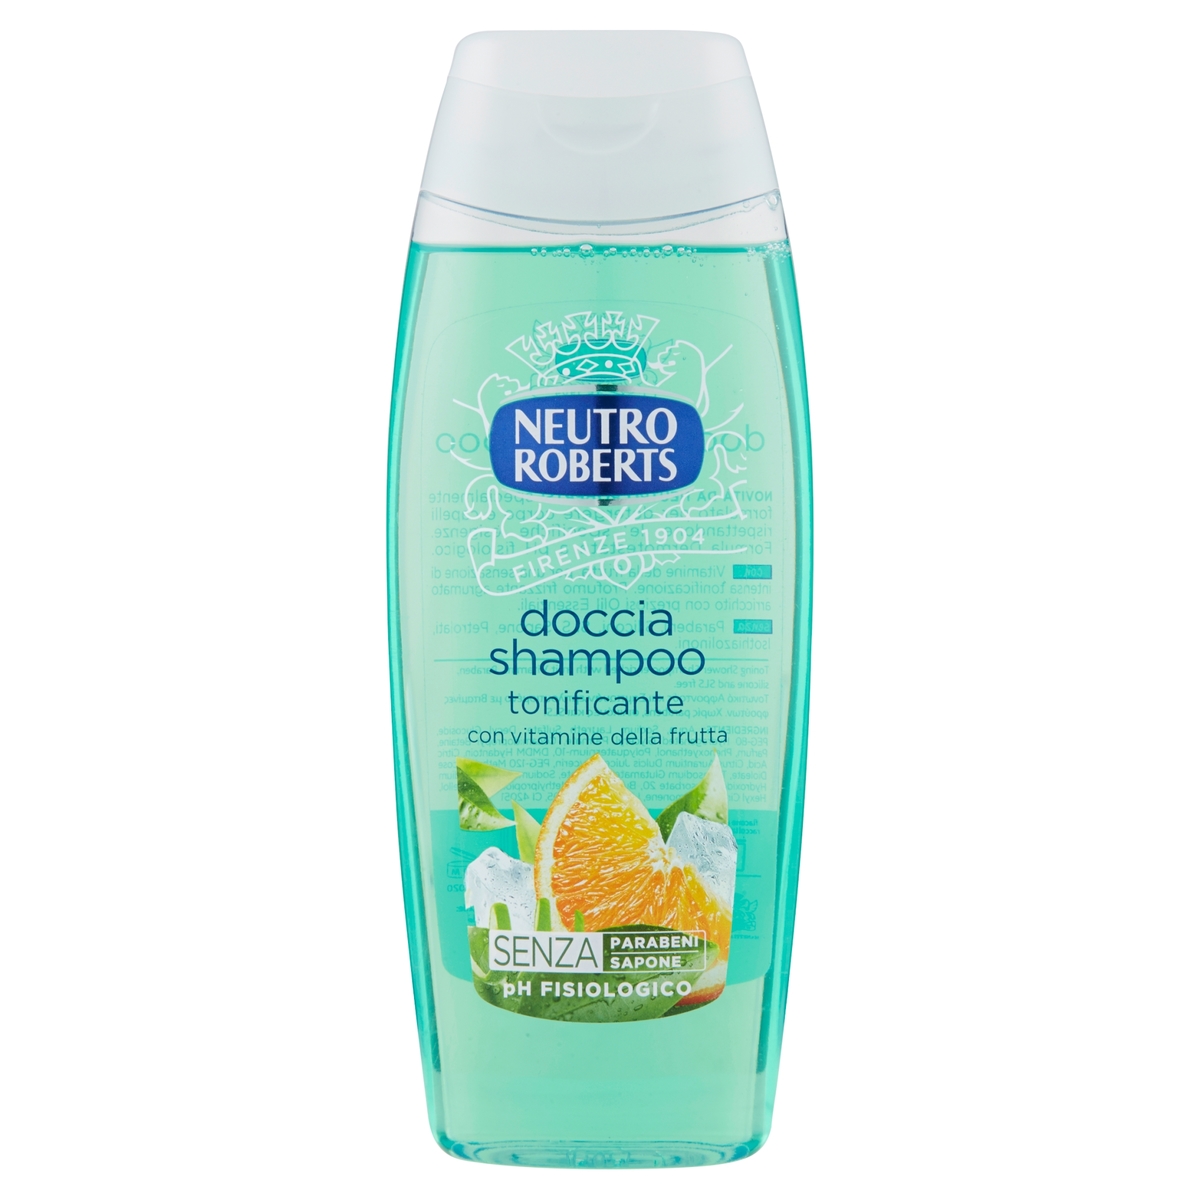 Image of Neutro Roberts Doccia Shampoo tonificante Vitamine della frutta 250 ml 8002410009620